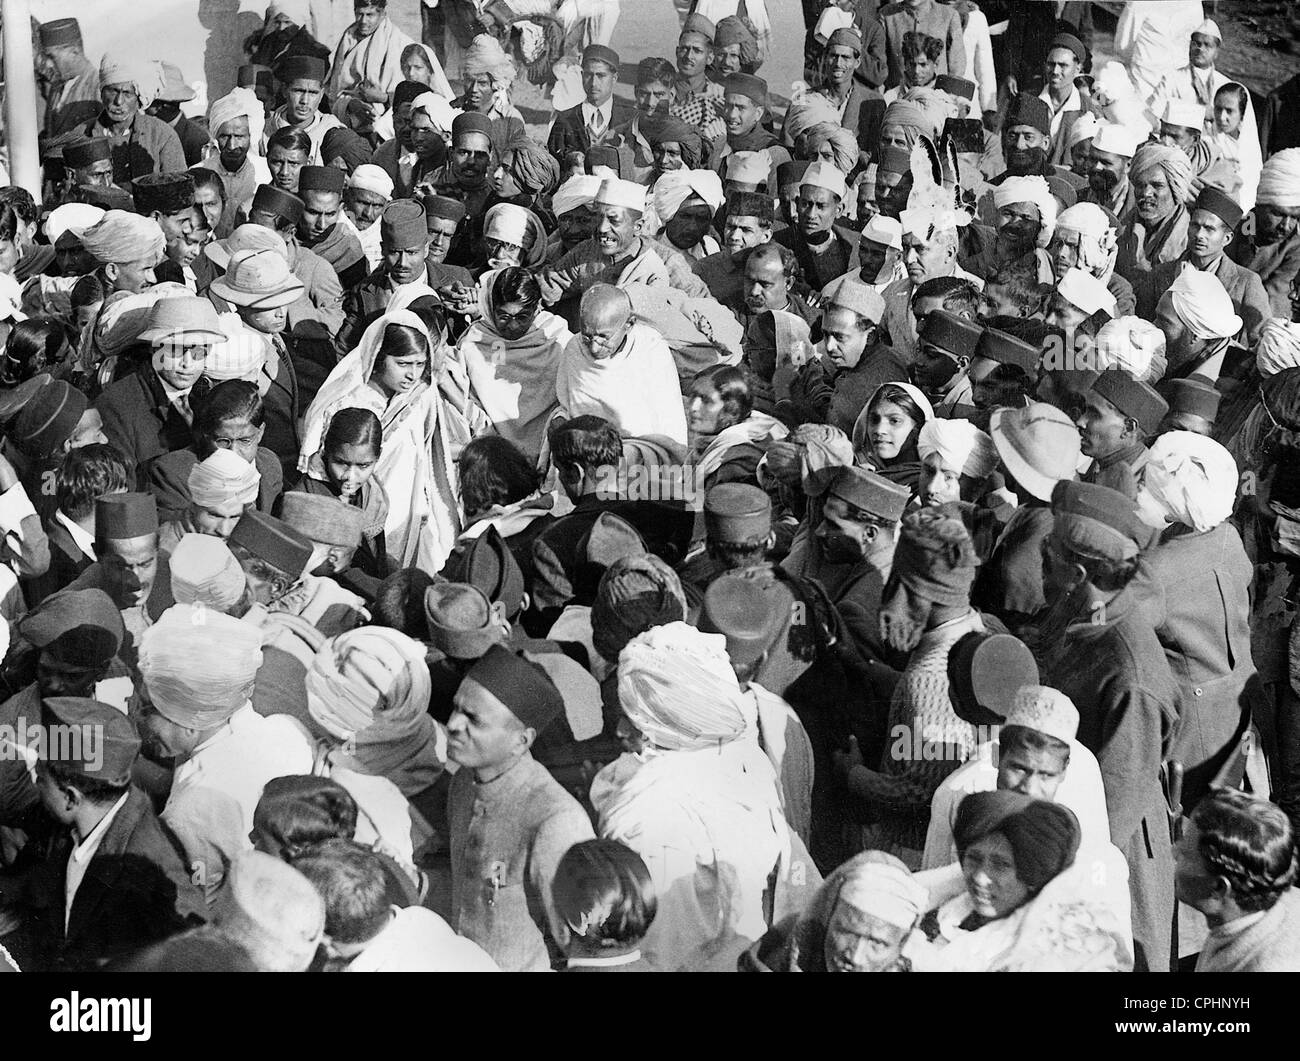 Mahatma Gandhi campagne pour le mouvement d'indépendance indienne, 1930 (photo n/b) Banque D'Images